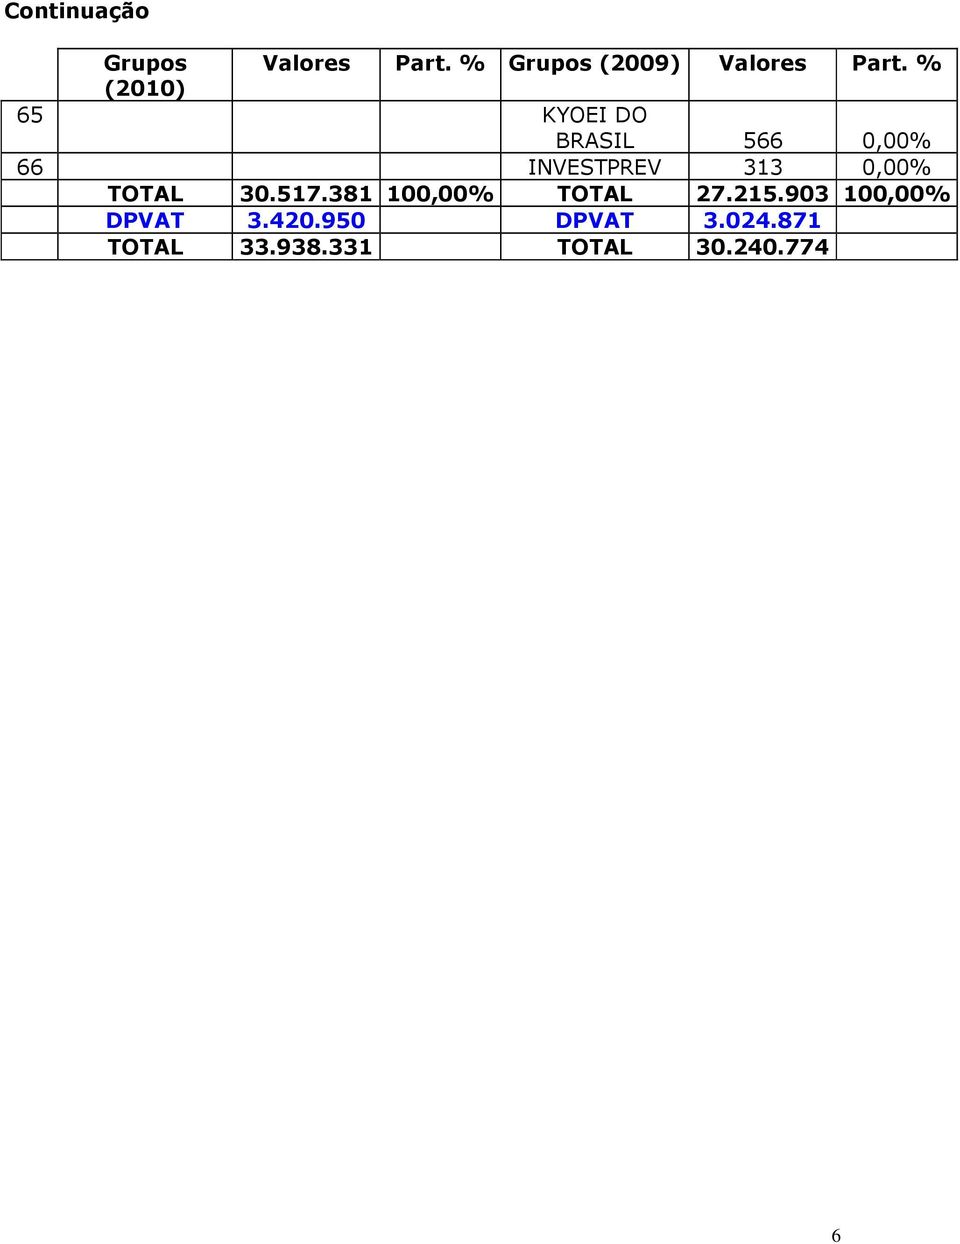 % (2010) 65 KYOEI DO BRASIL 566 0,00% 66 INVESTPREV 313